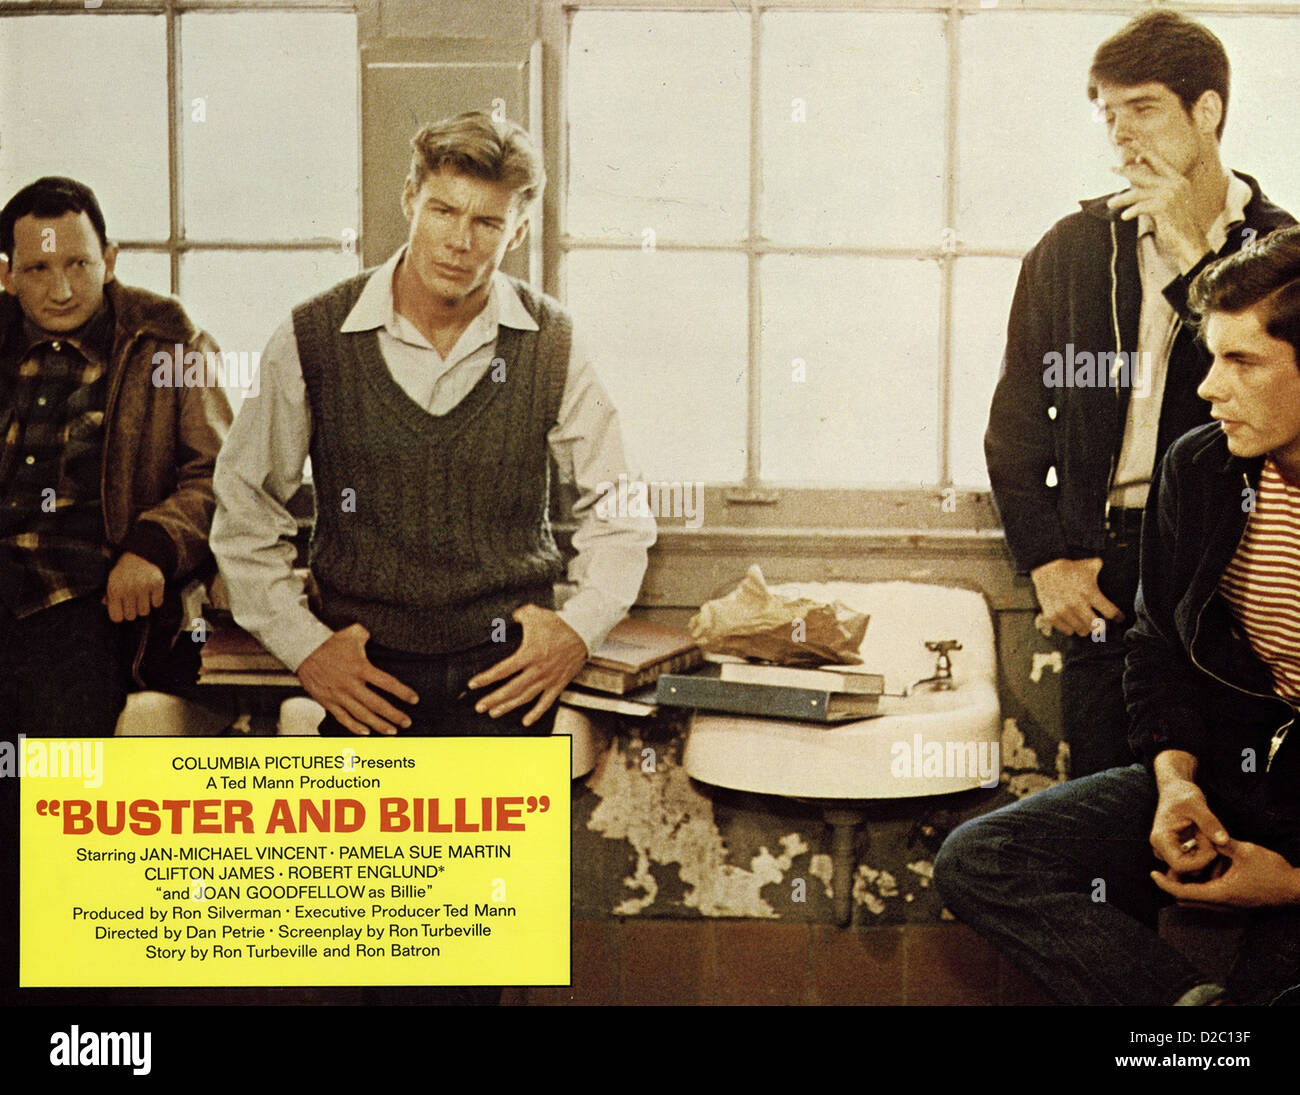 Buster Liebt Billie Buster And Billie Szenenbild Stock Photo - Alamy